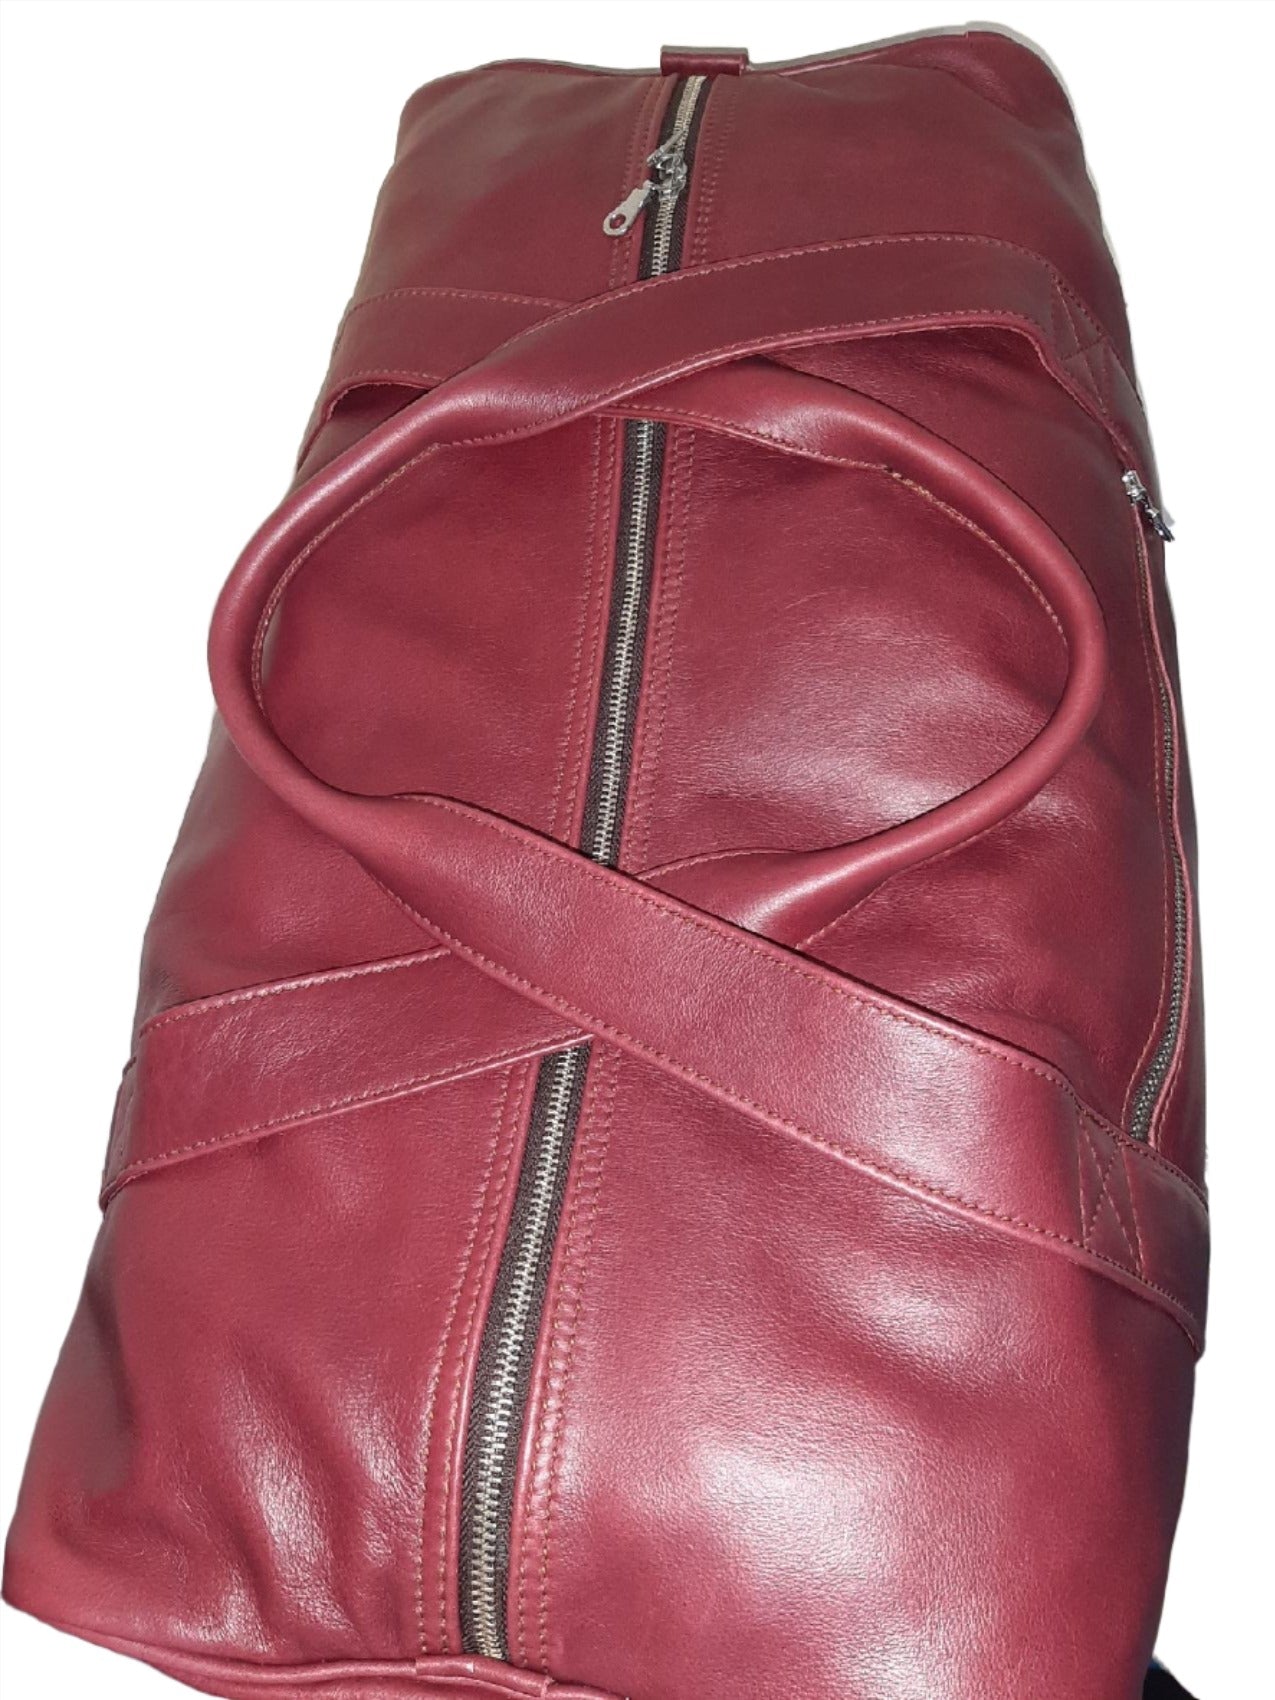 Masai leather travel bag XL - Cape Masai leather 